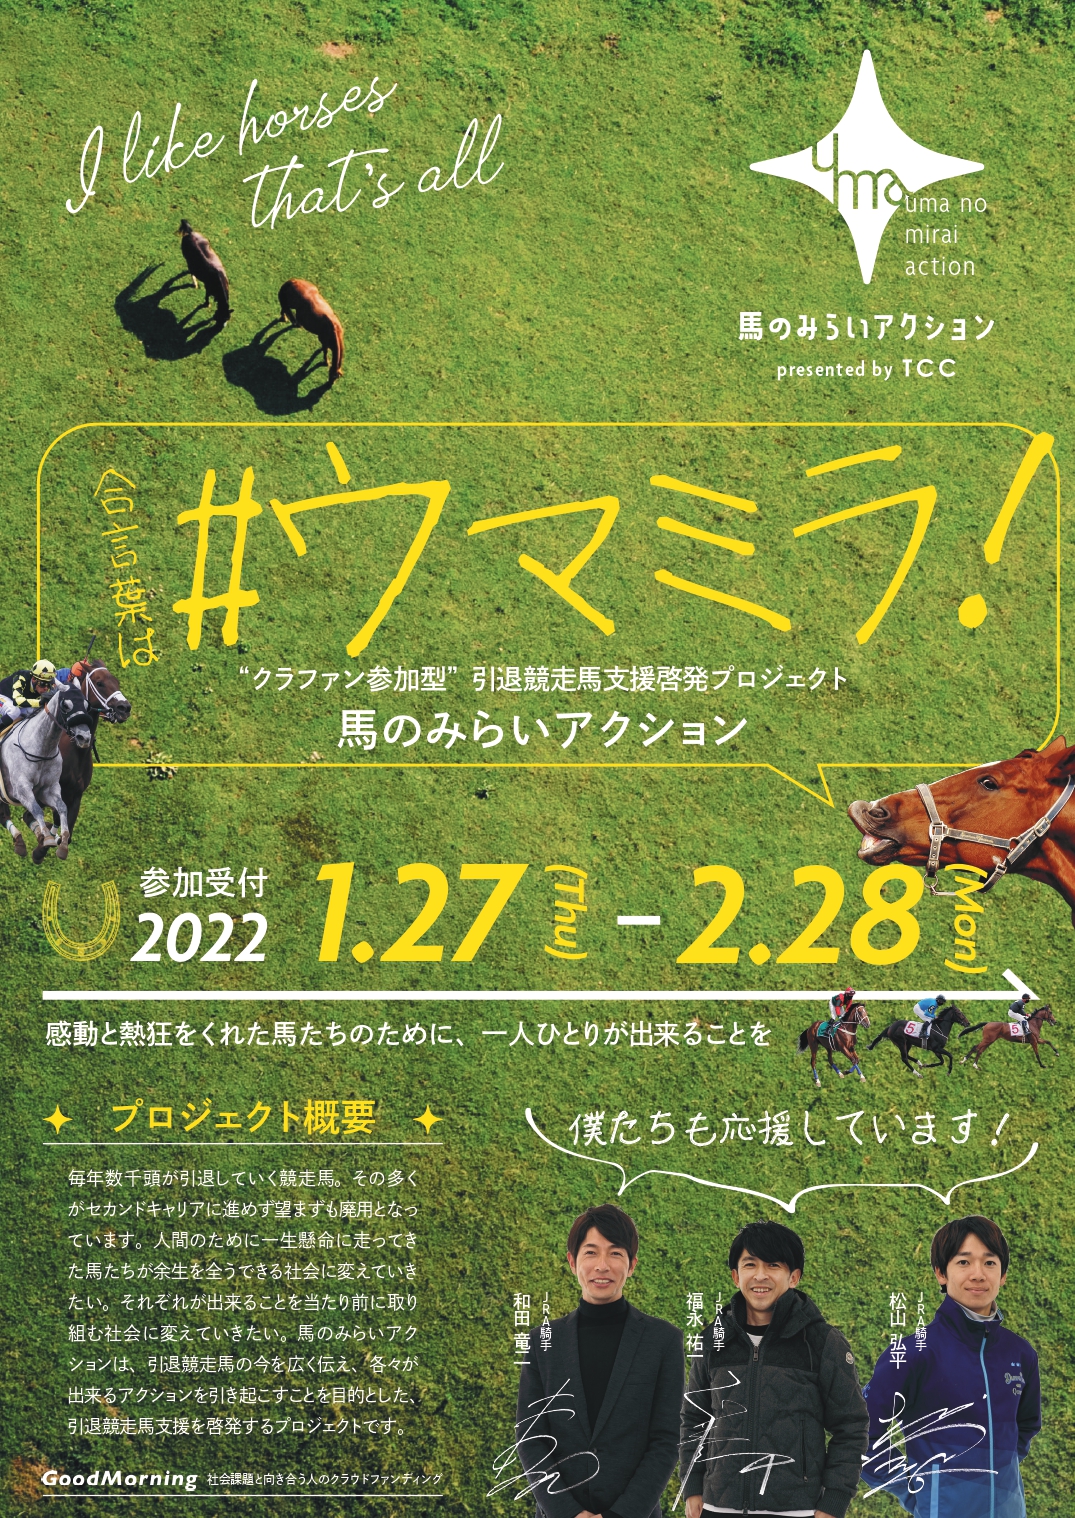 【お知らせ】"クラファン参加型"引退競走馬支援啓発プロジェクト「馬のみらいアクション」始動!